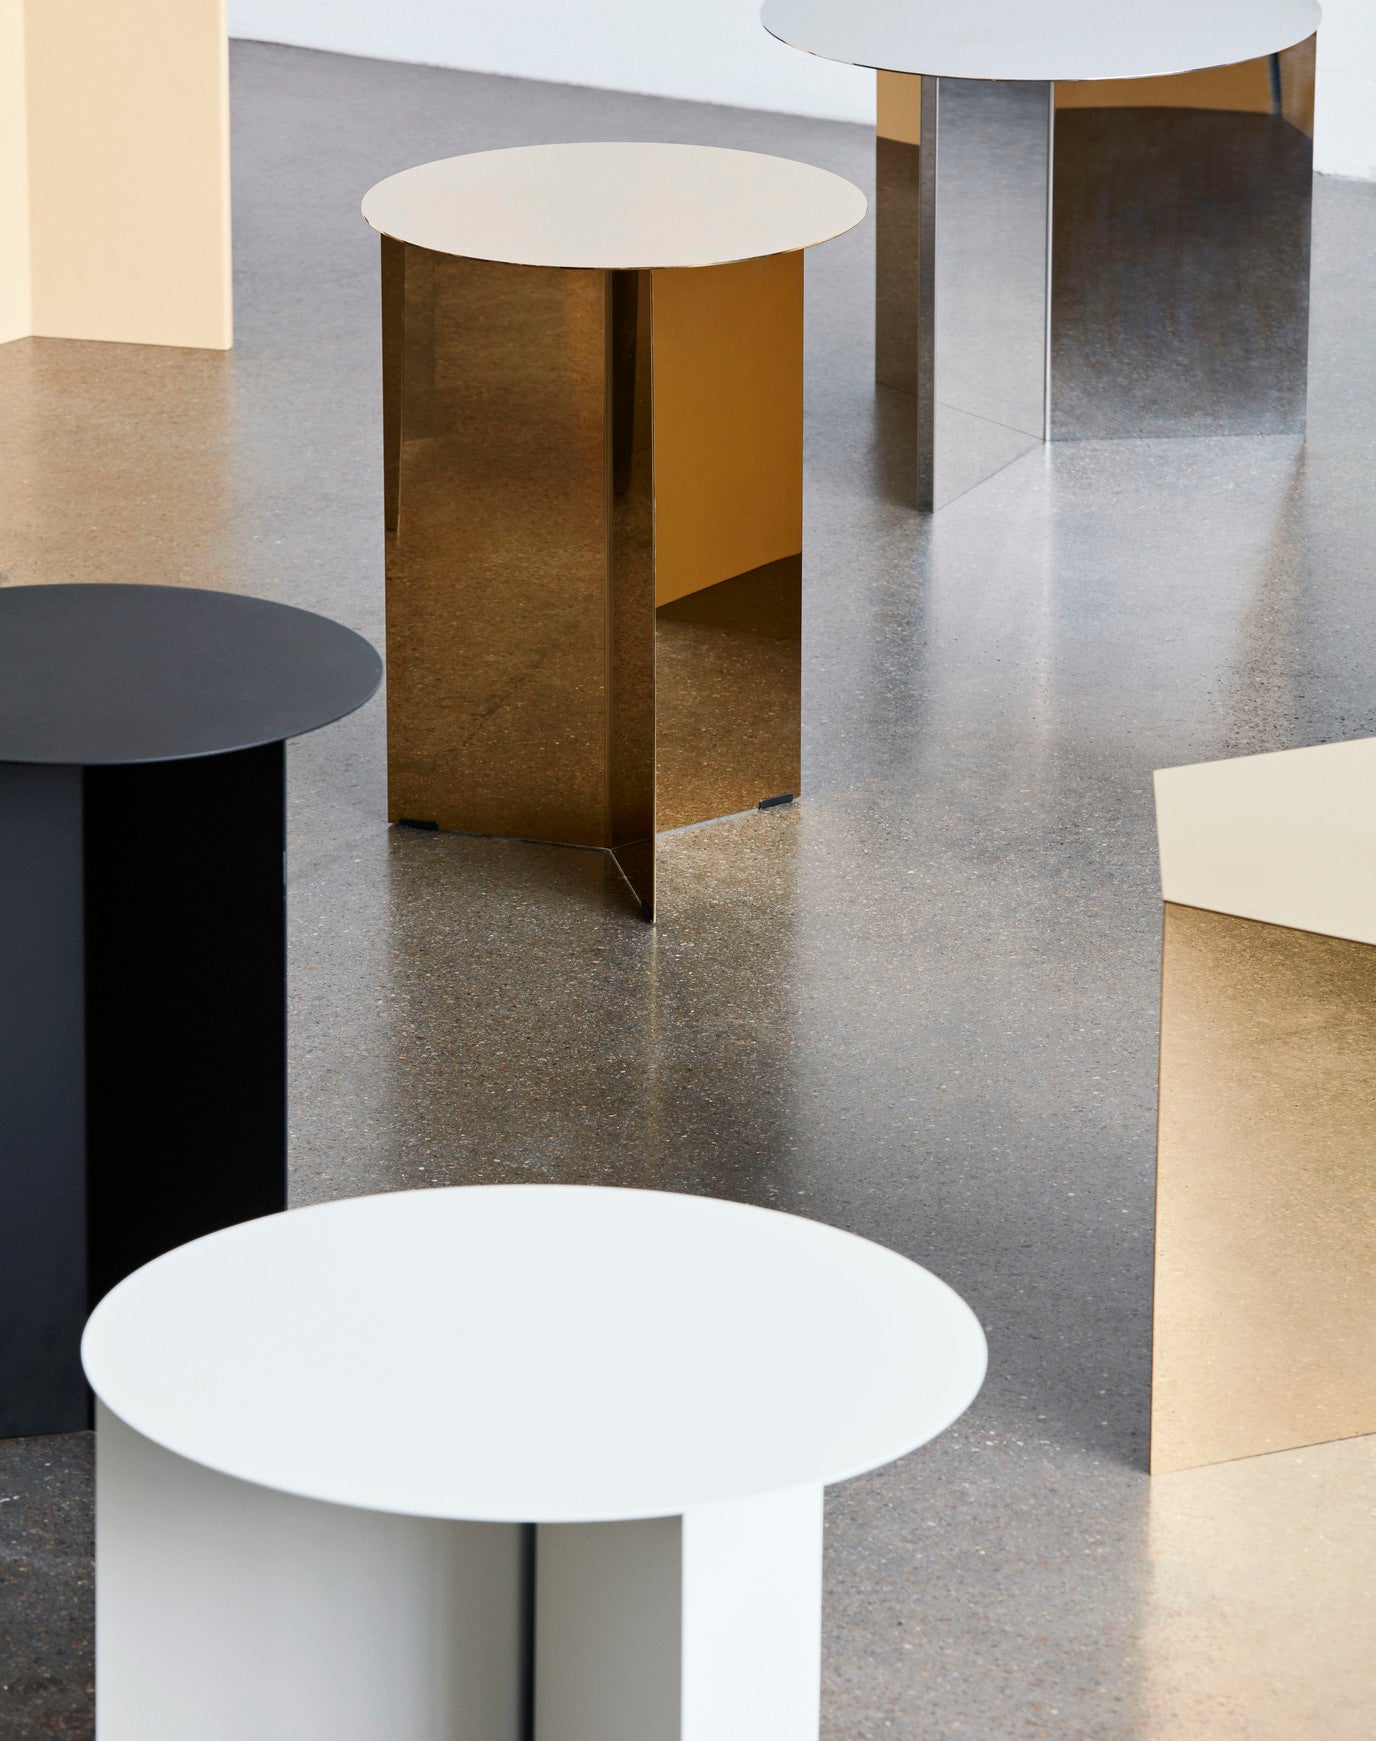 Slit Table Round Side table
 - Str.: Ø45*35,5 cm
 - Farve: Black